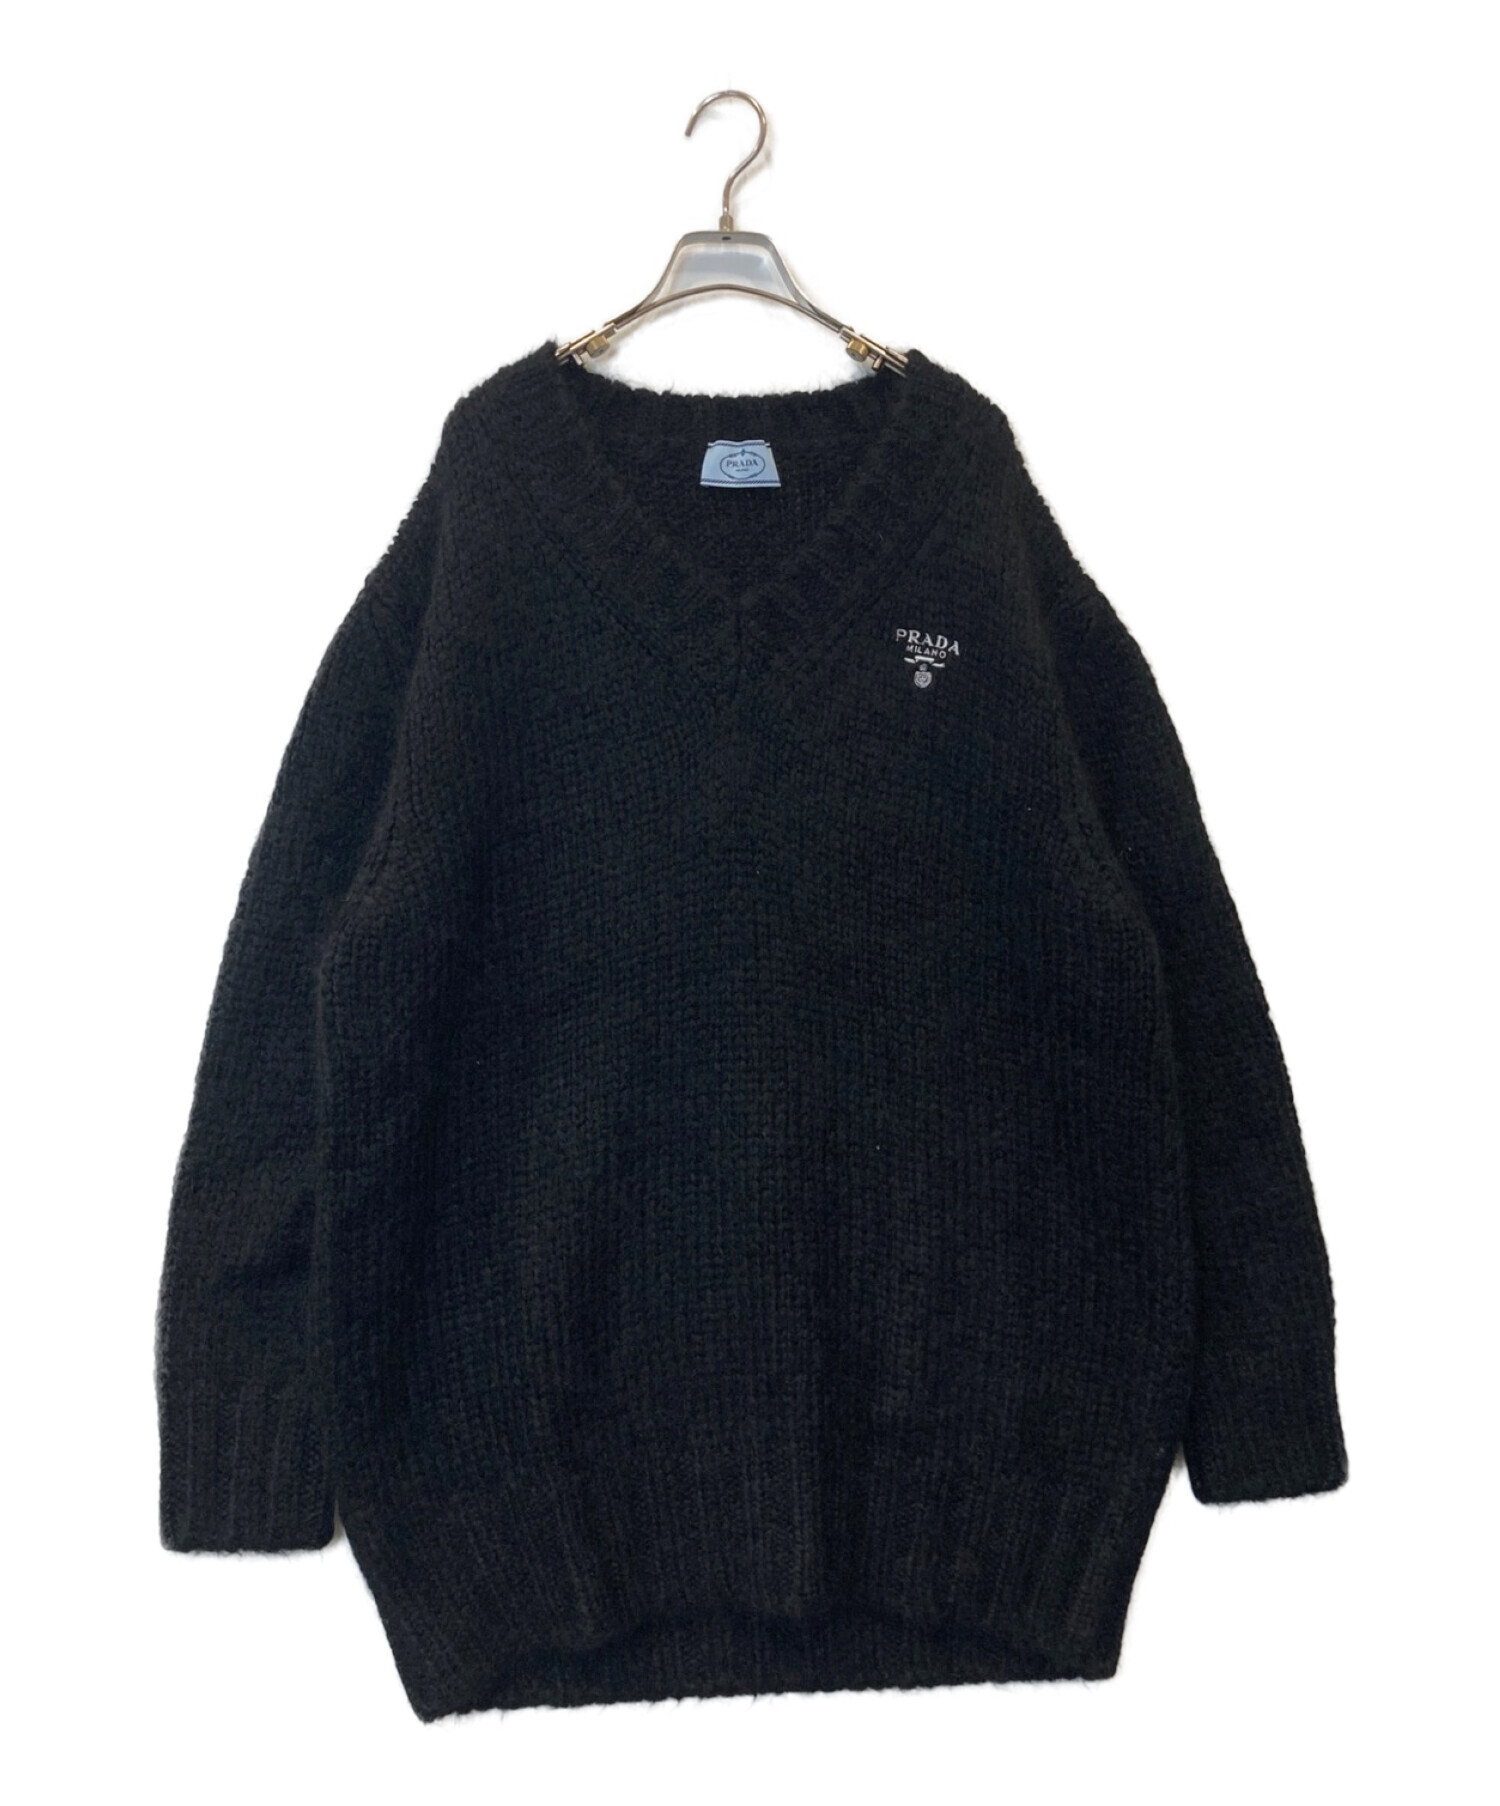 PRADA (プラダ) ロゴVネックニットセーター ブラック サイズ:38